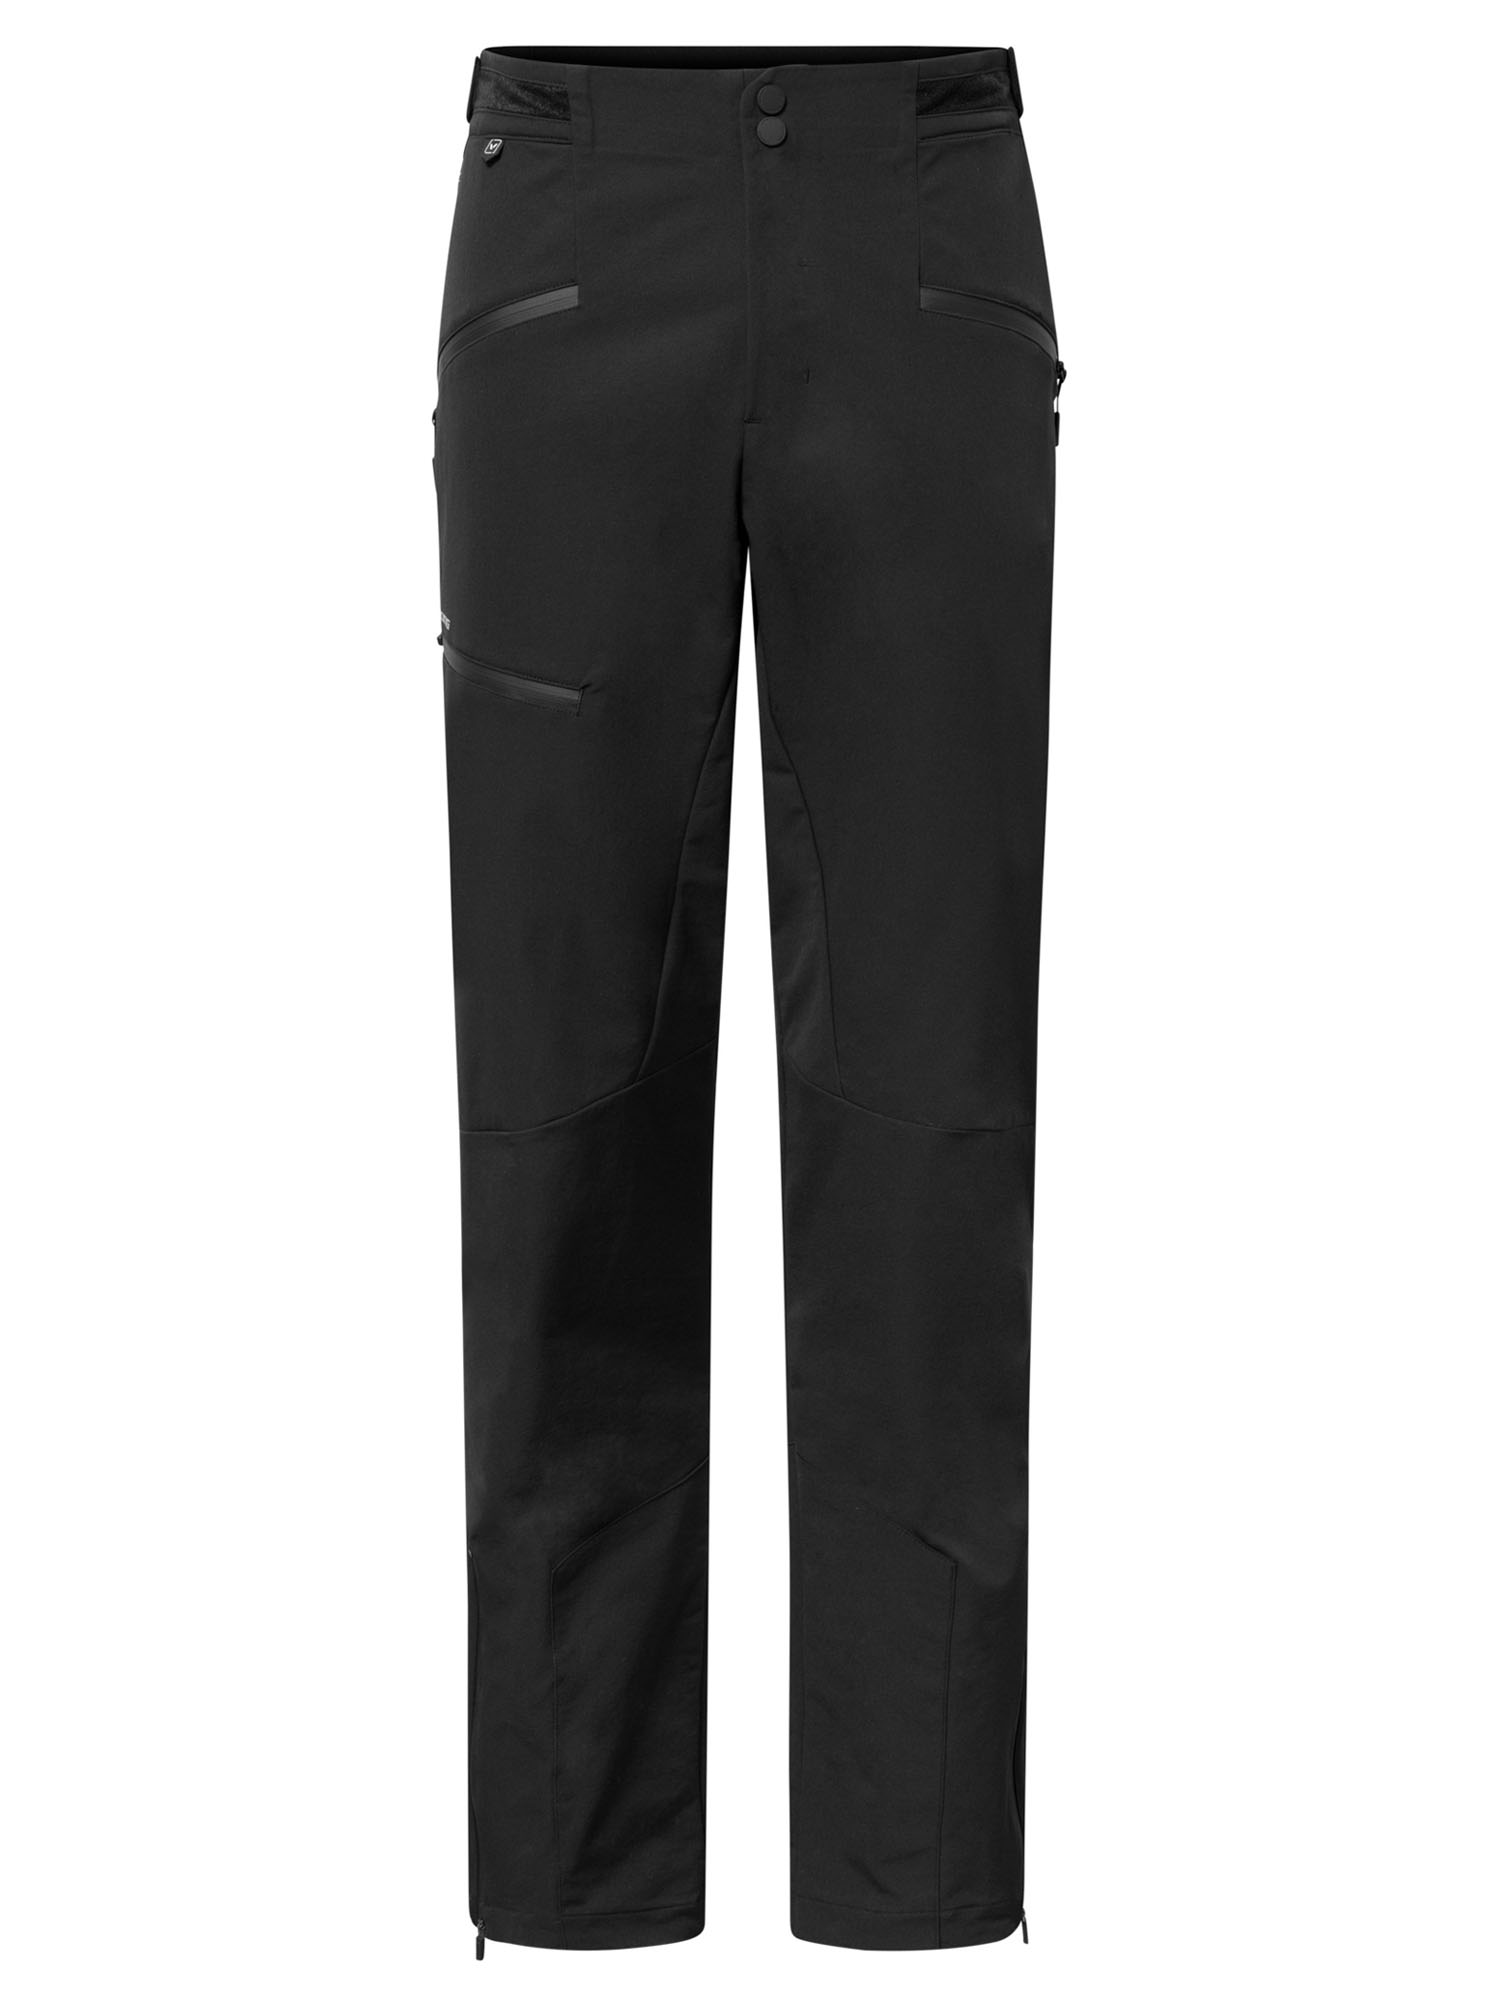 Спортивные брюки мужские VIKING Expander Warm Man черные L